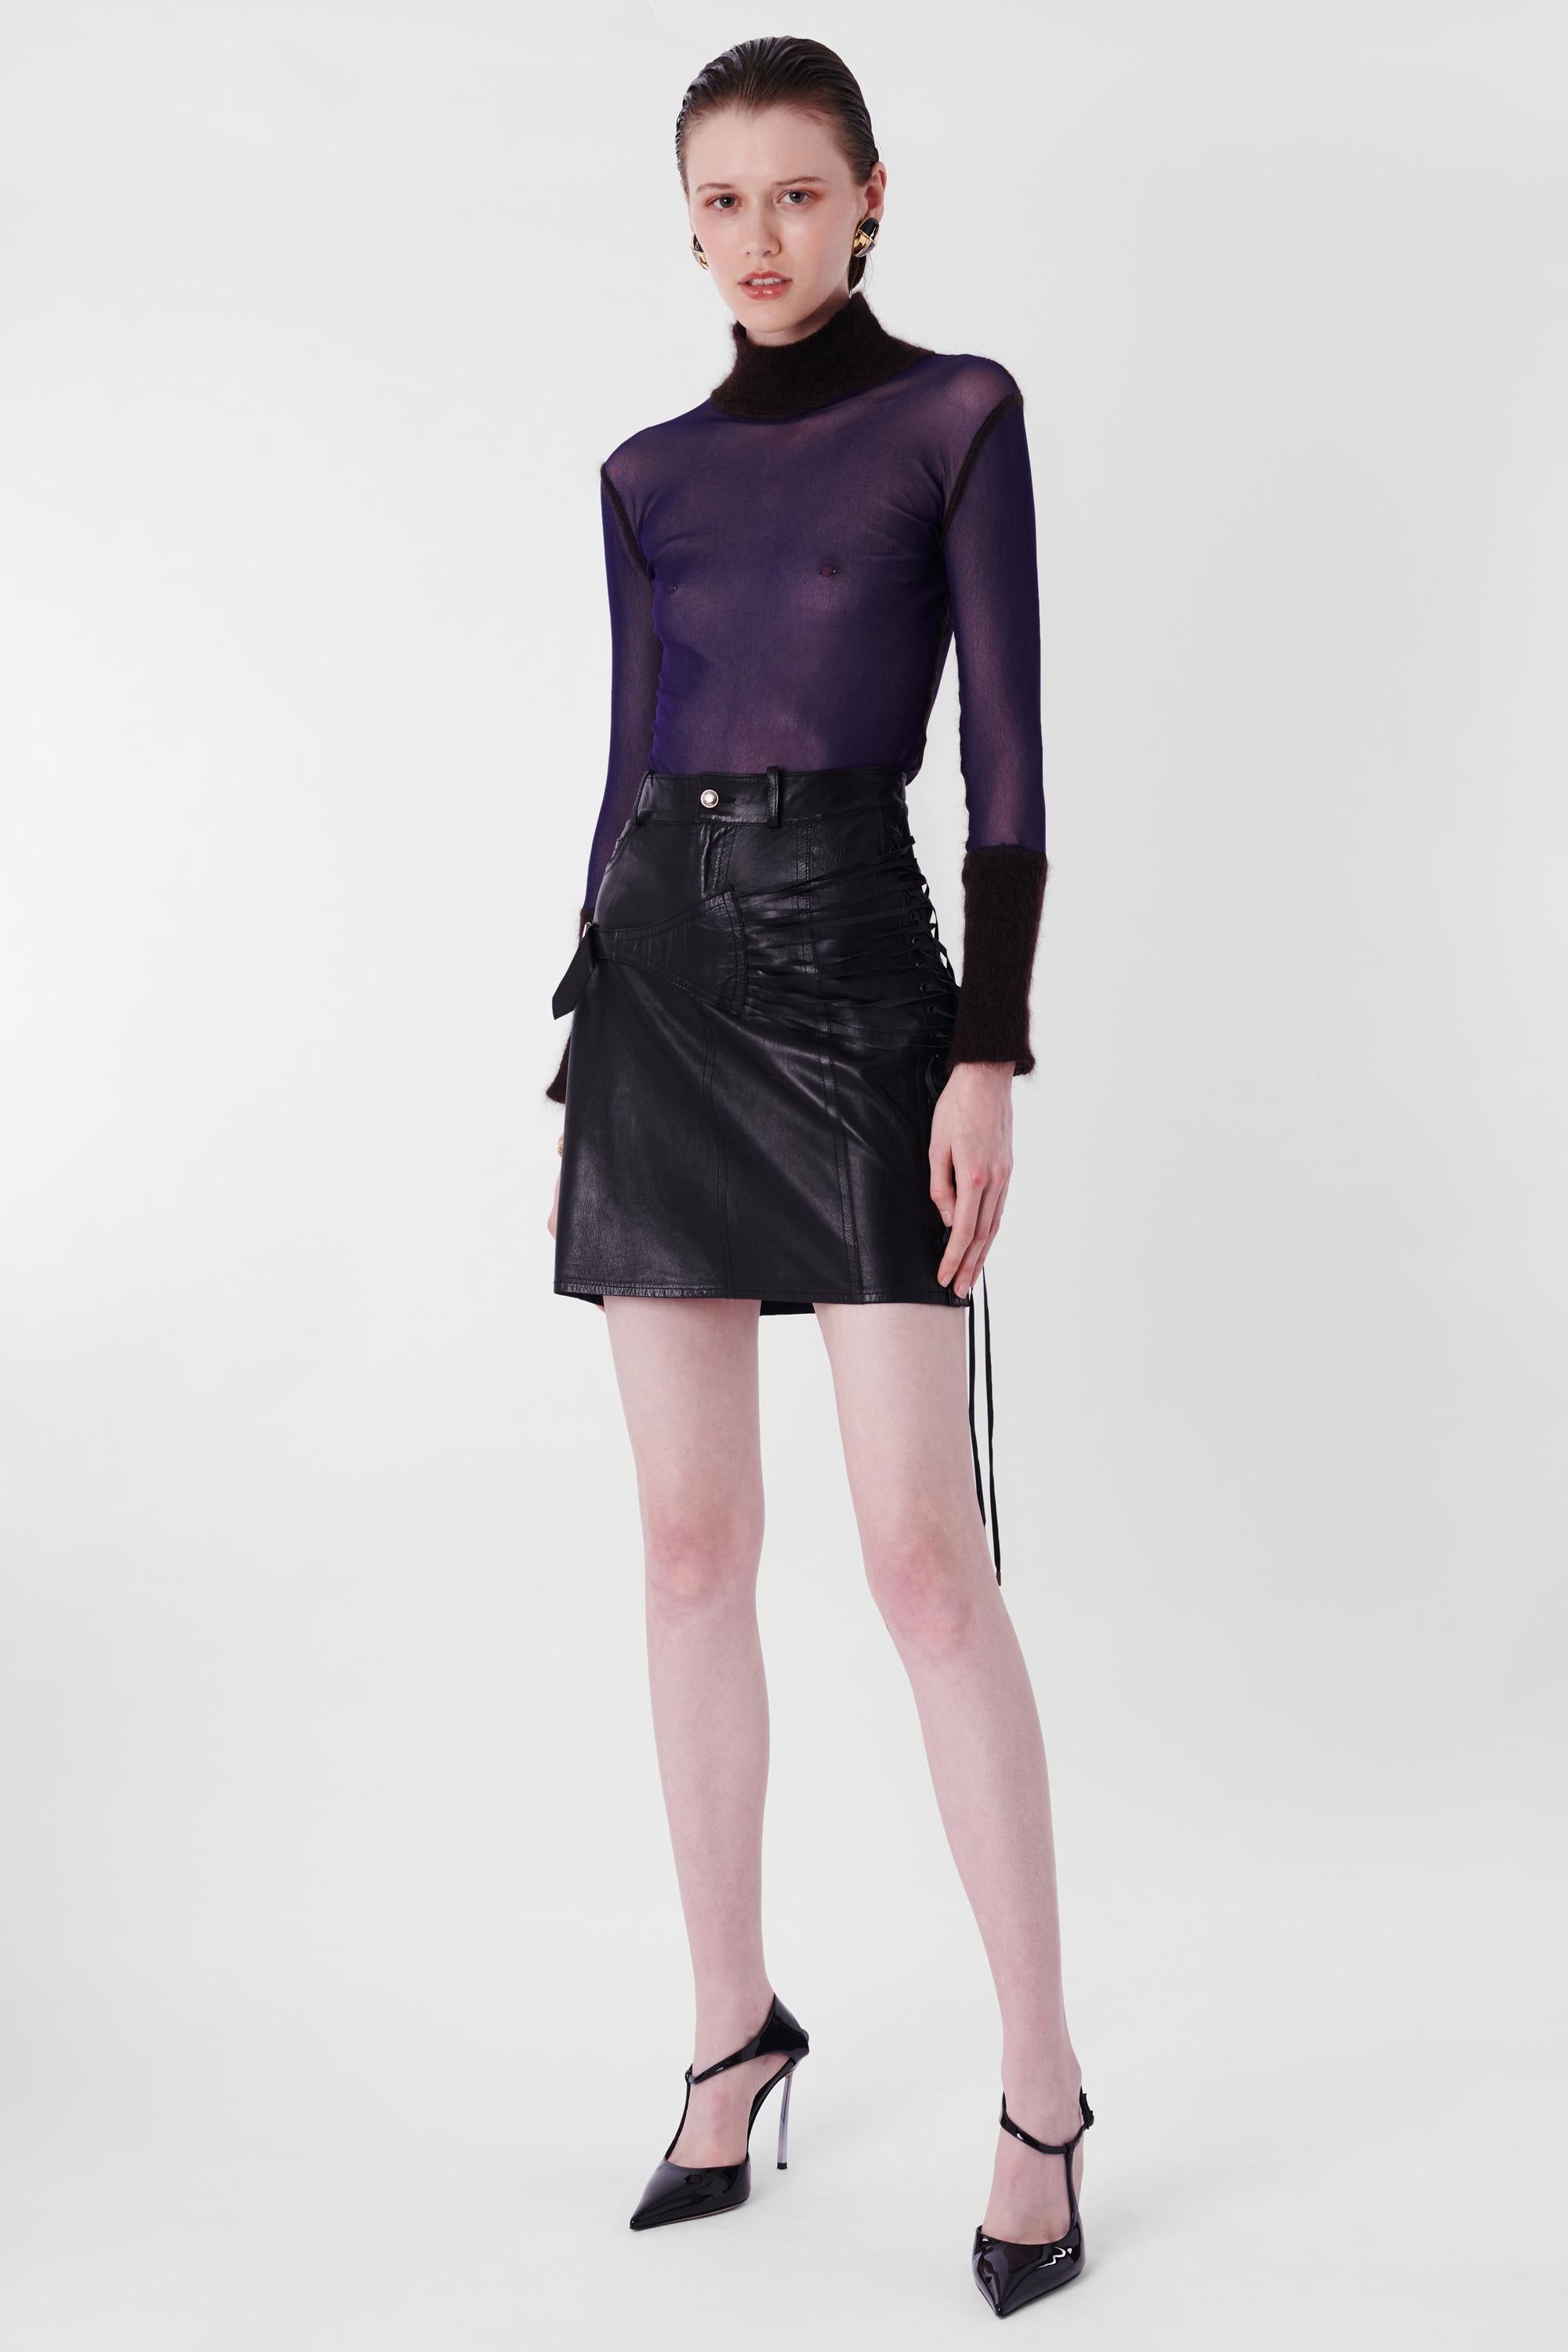 Nous sommes heureux de vous présenter cet incroyable défilé Christian Dior by John Galliano F/W 2003 Black Leather Bondage Mini Skirt. Elle est dotée d'un laçage sur les côtés et d'un détail bondage sur les hanches, d'une fermeture à glissière et